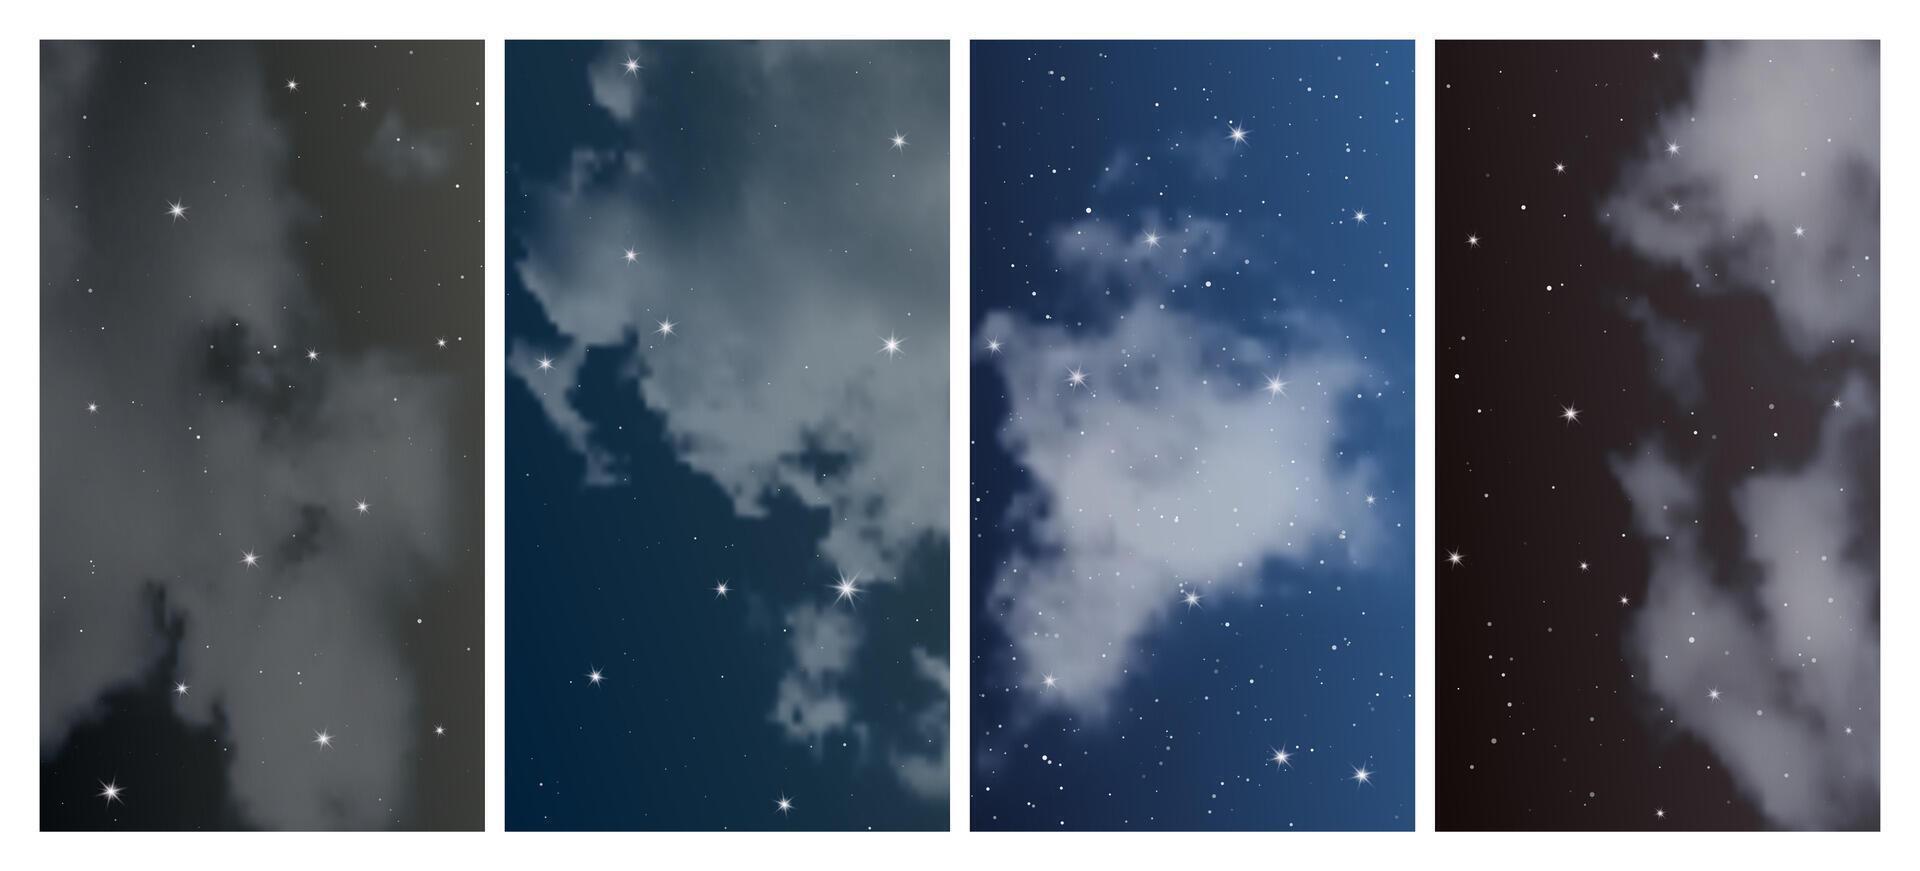 nacht lucht met veel sterren vector